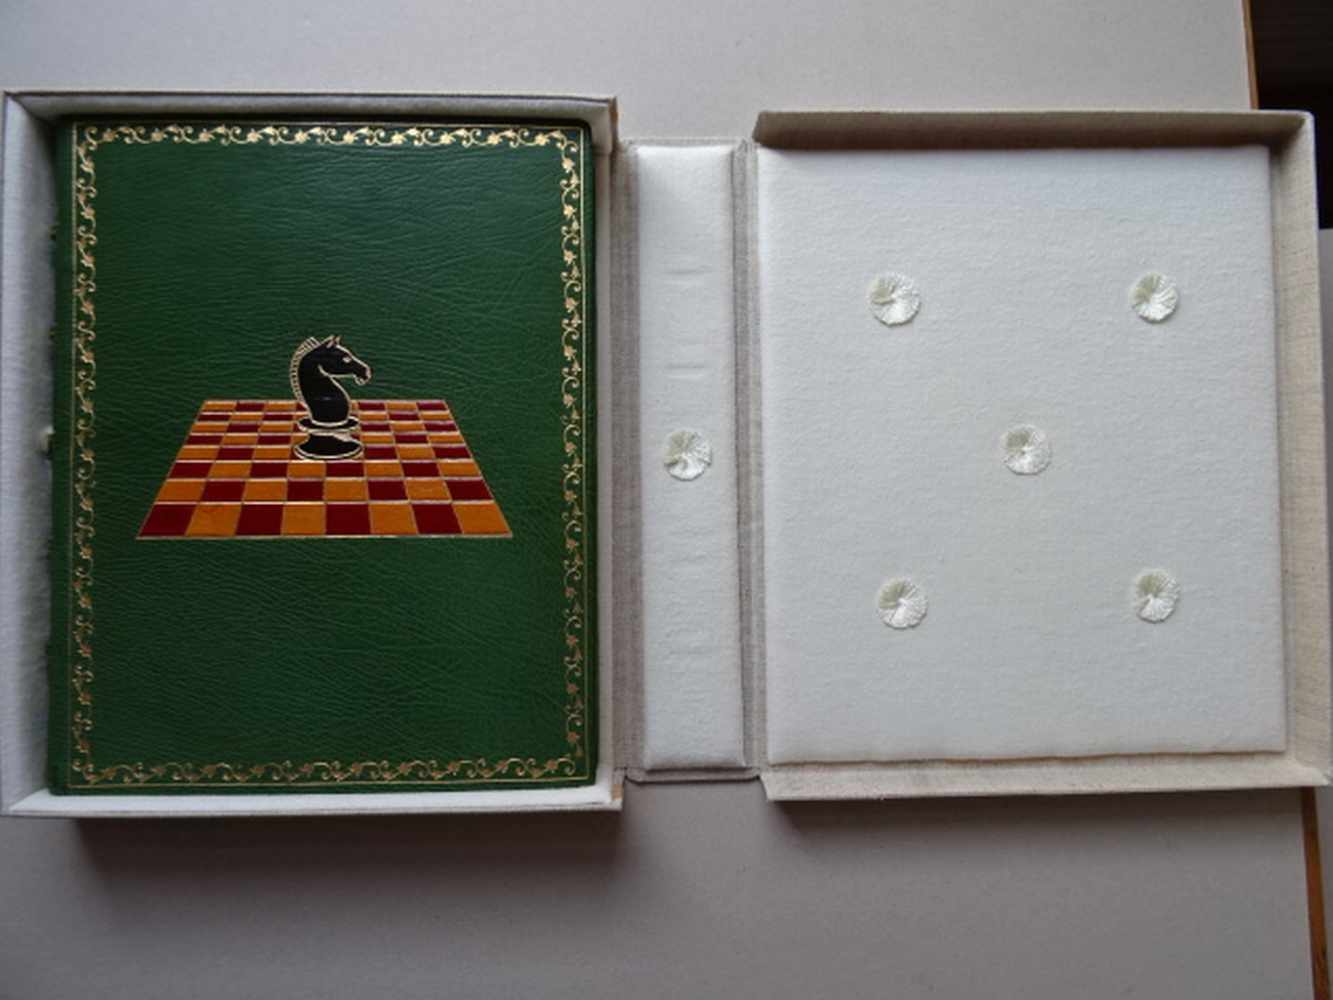 Einbände.-Gästebuch eines Schachspielers. Ca. 150 weiße Blätter. Um 1970. 4°. Grüner Maroquin- - Image 6 of 6